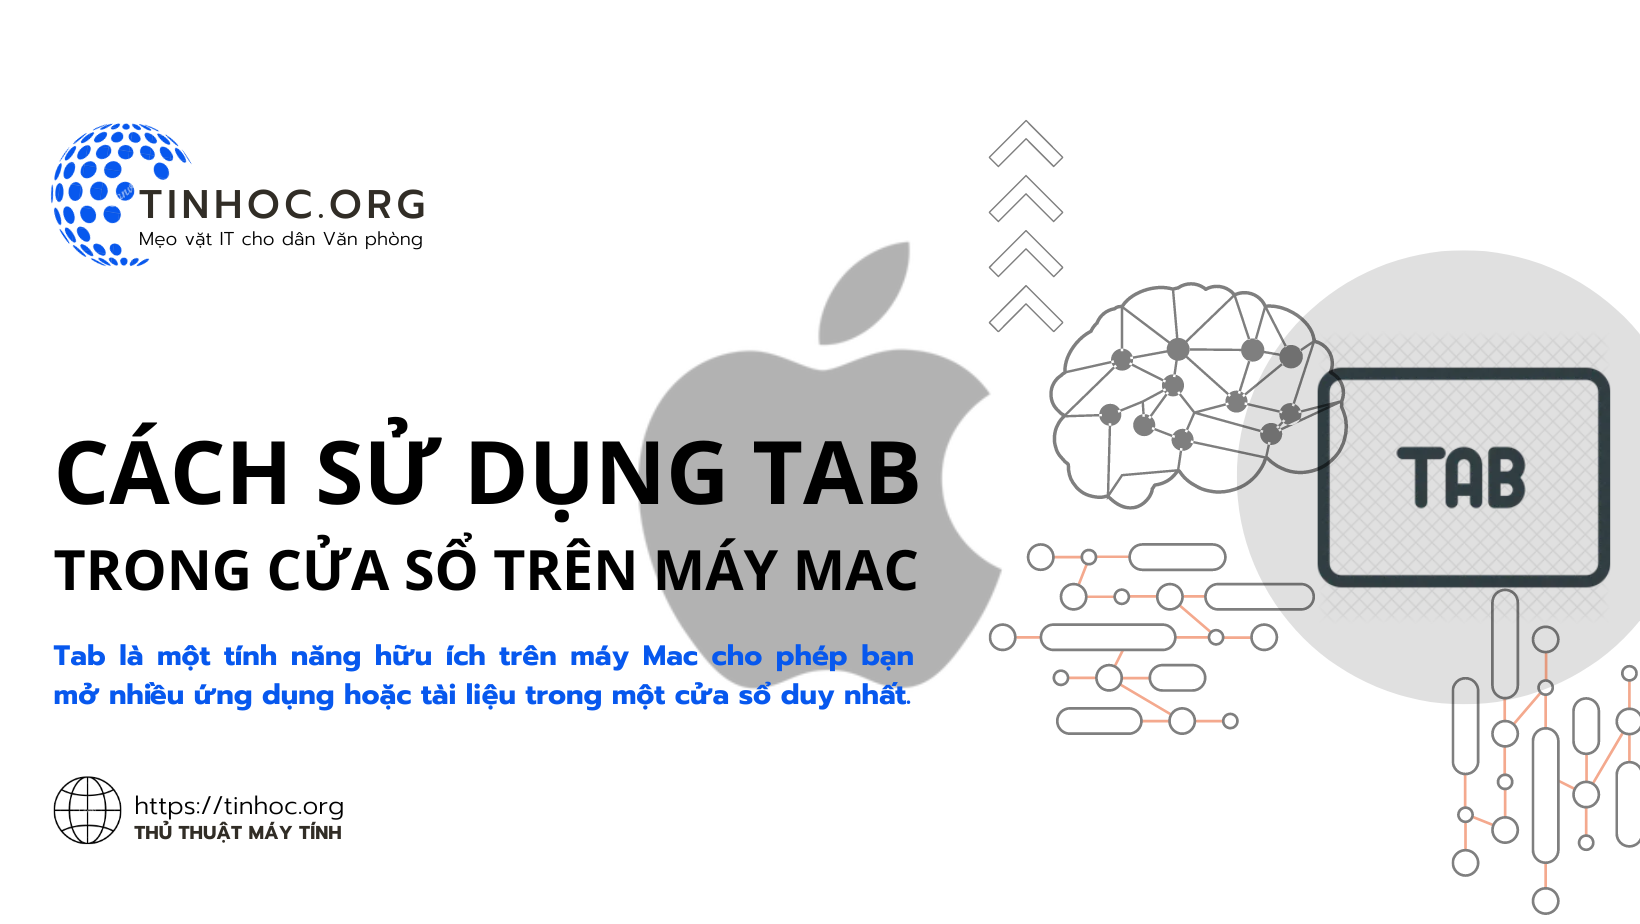 Tab là một tính năng hữu ích trên máy Mac cho phép bạn mở nhiều ứng dụng hoặc tài liệu trong một cửa sổ duy nhất.